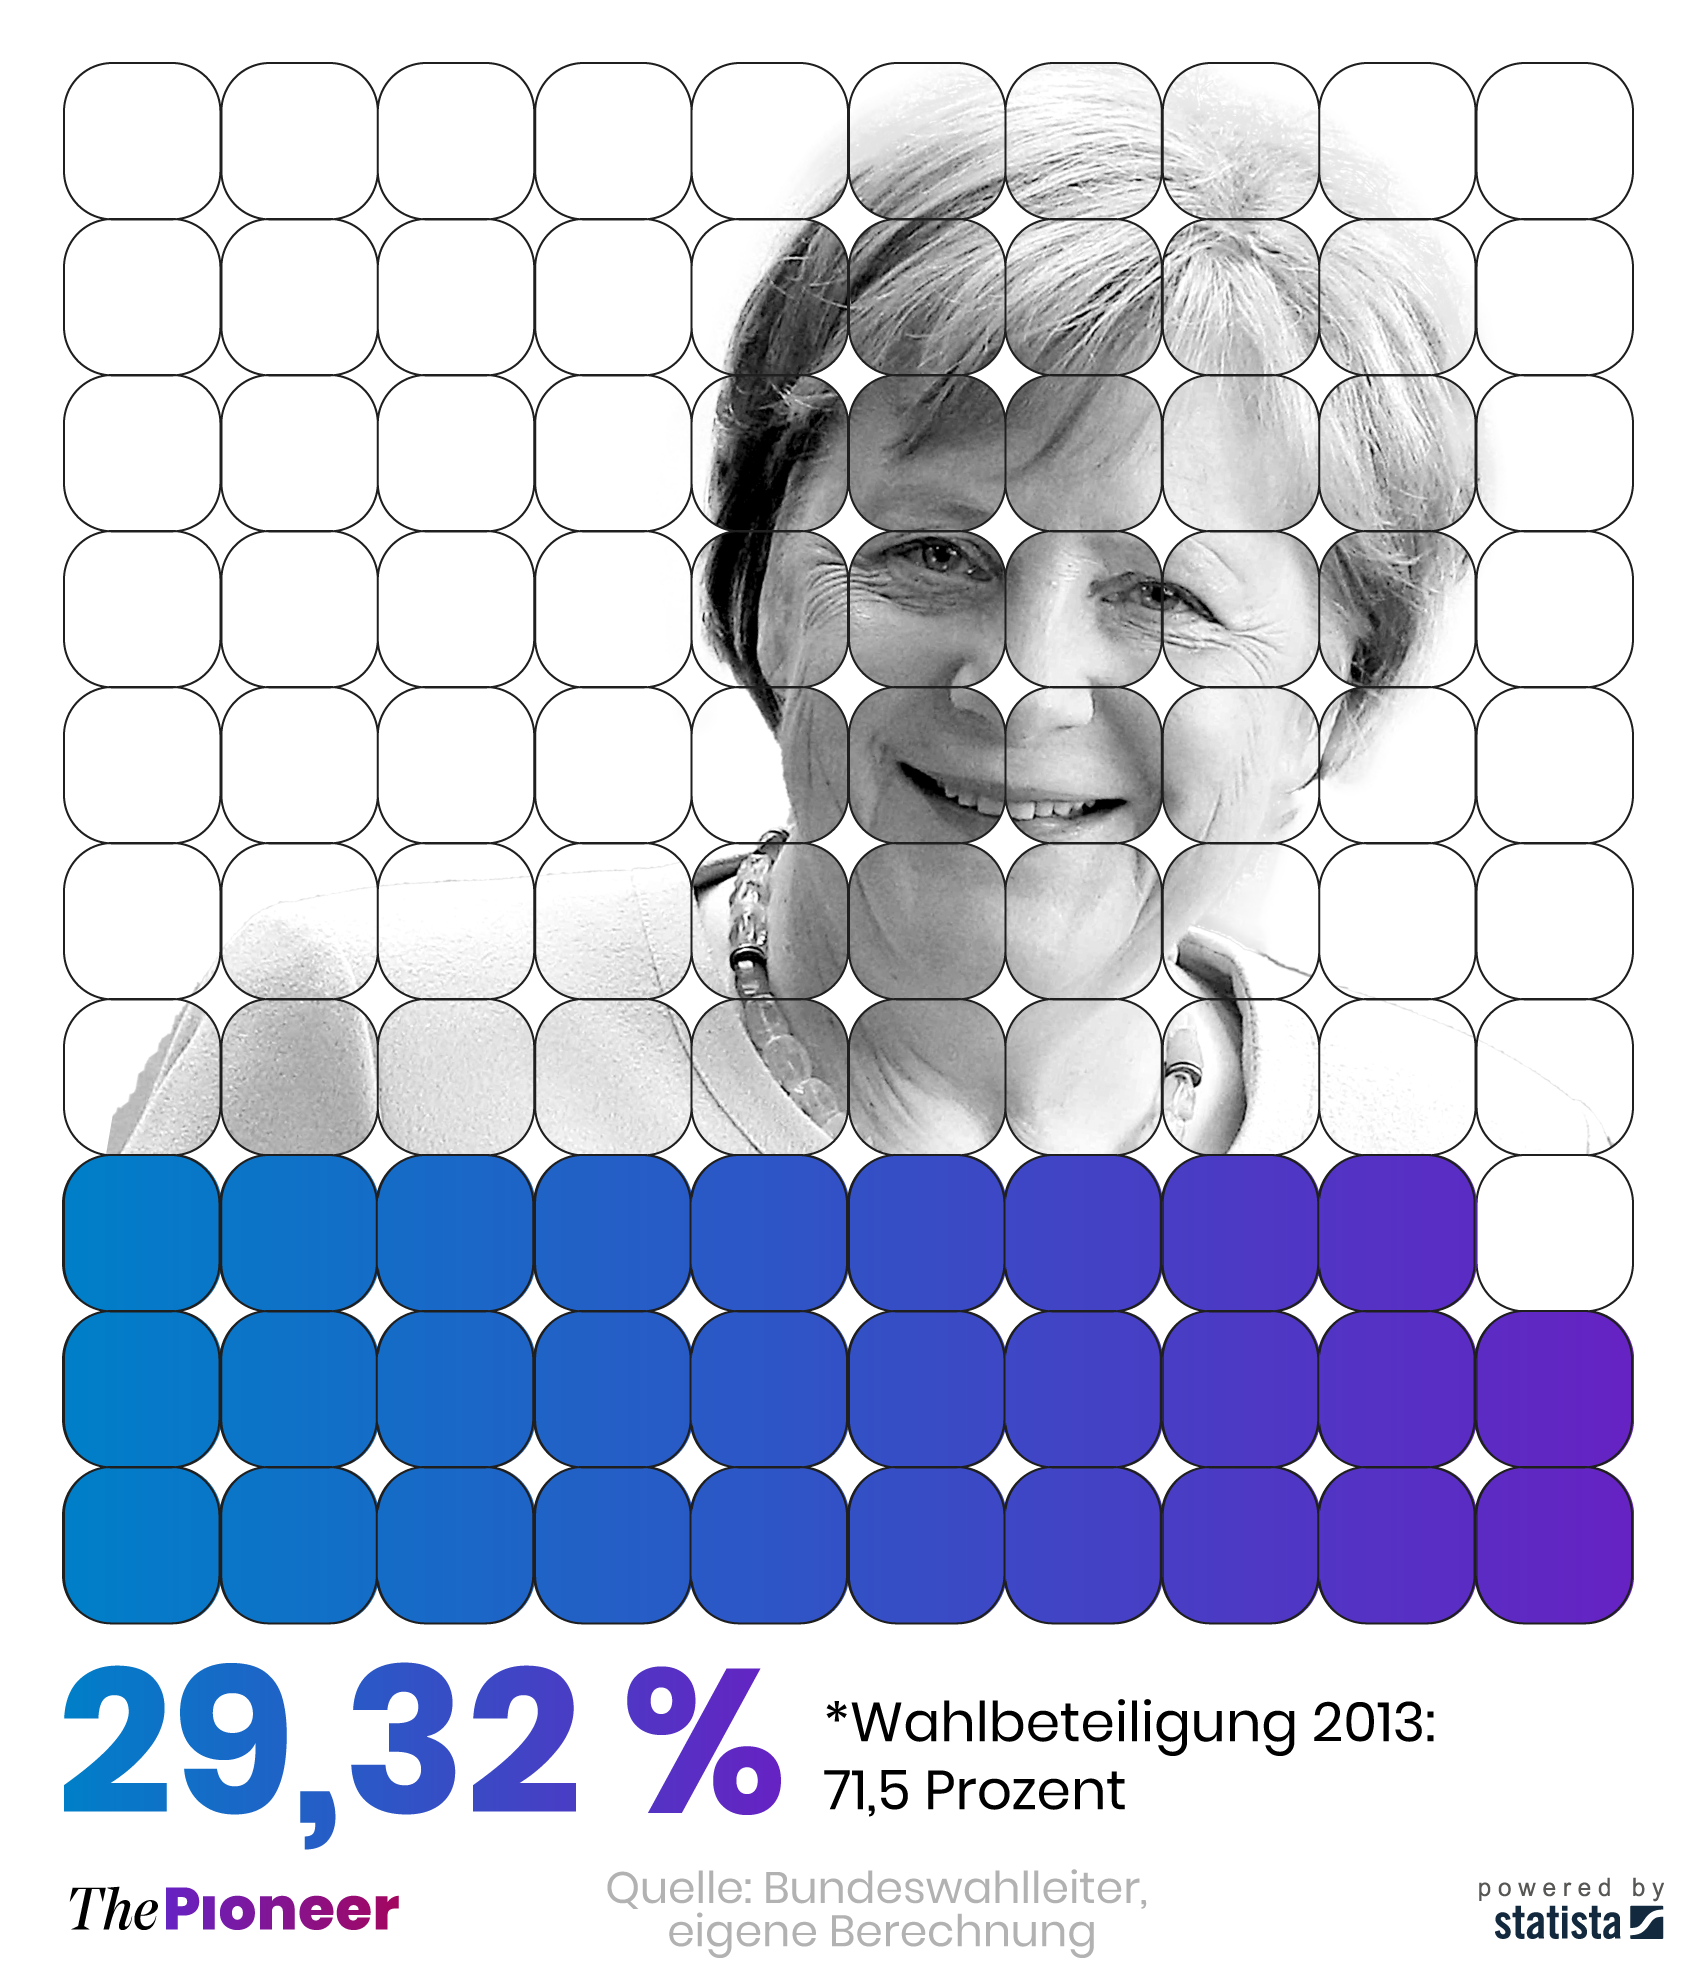 Bundestagswahlergebnis der Union zur Merkel-Wahl 2013 unter Einbeziehung aller Wahlberechtigten, in Prozent